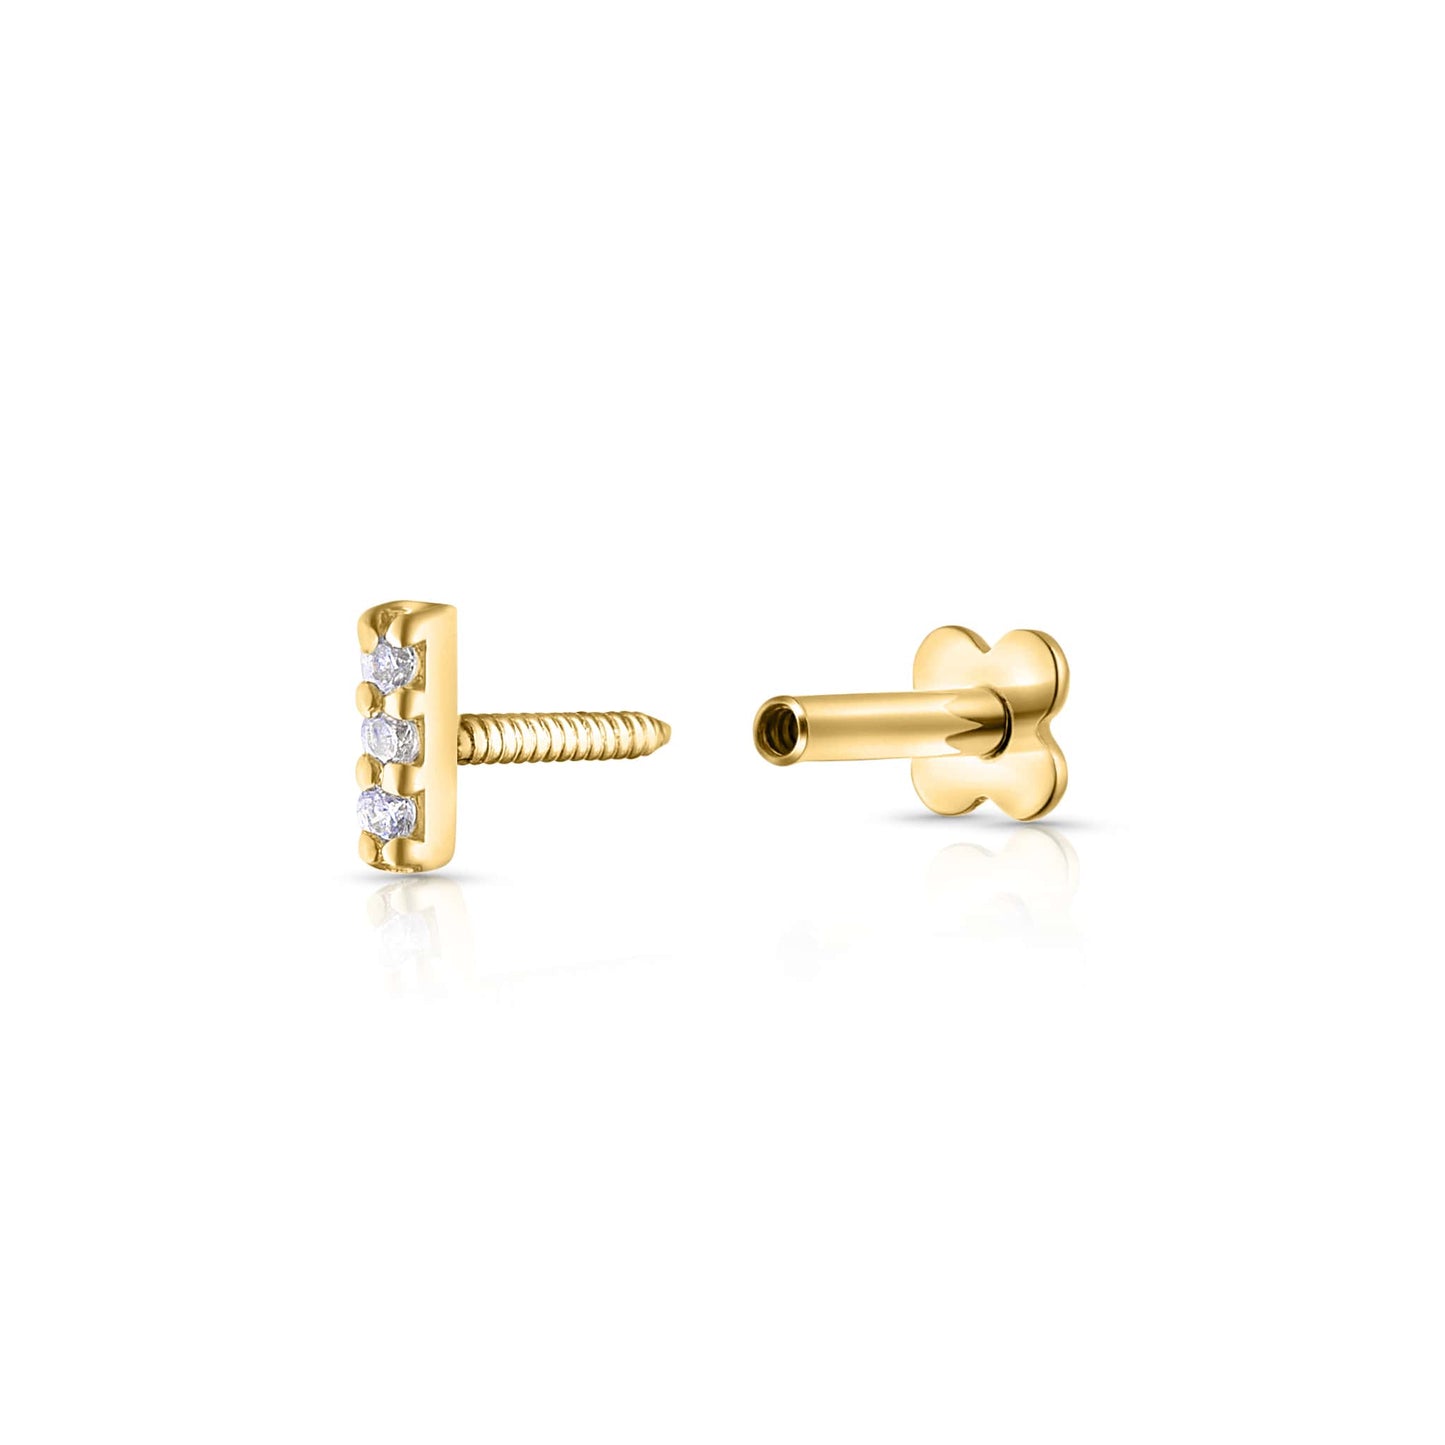 Twist lock of Stud earrings gold